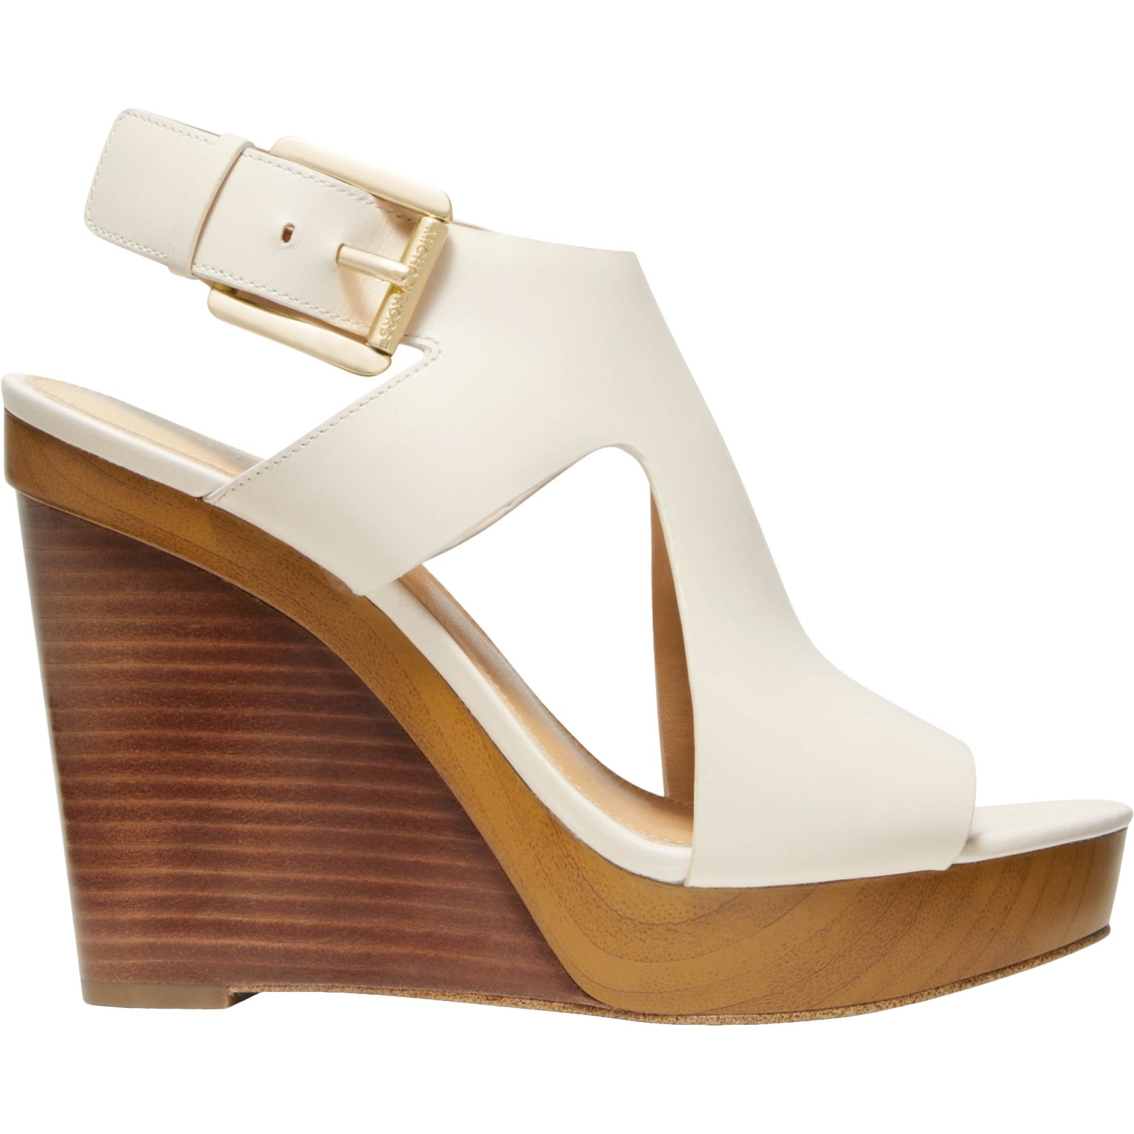 Michael Kors Josephine Wedge Sandals | Heels | Shoes | Shop The Exchange